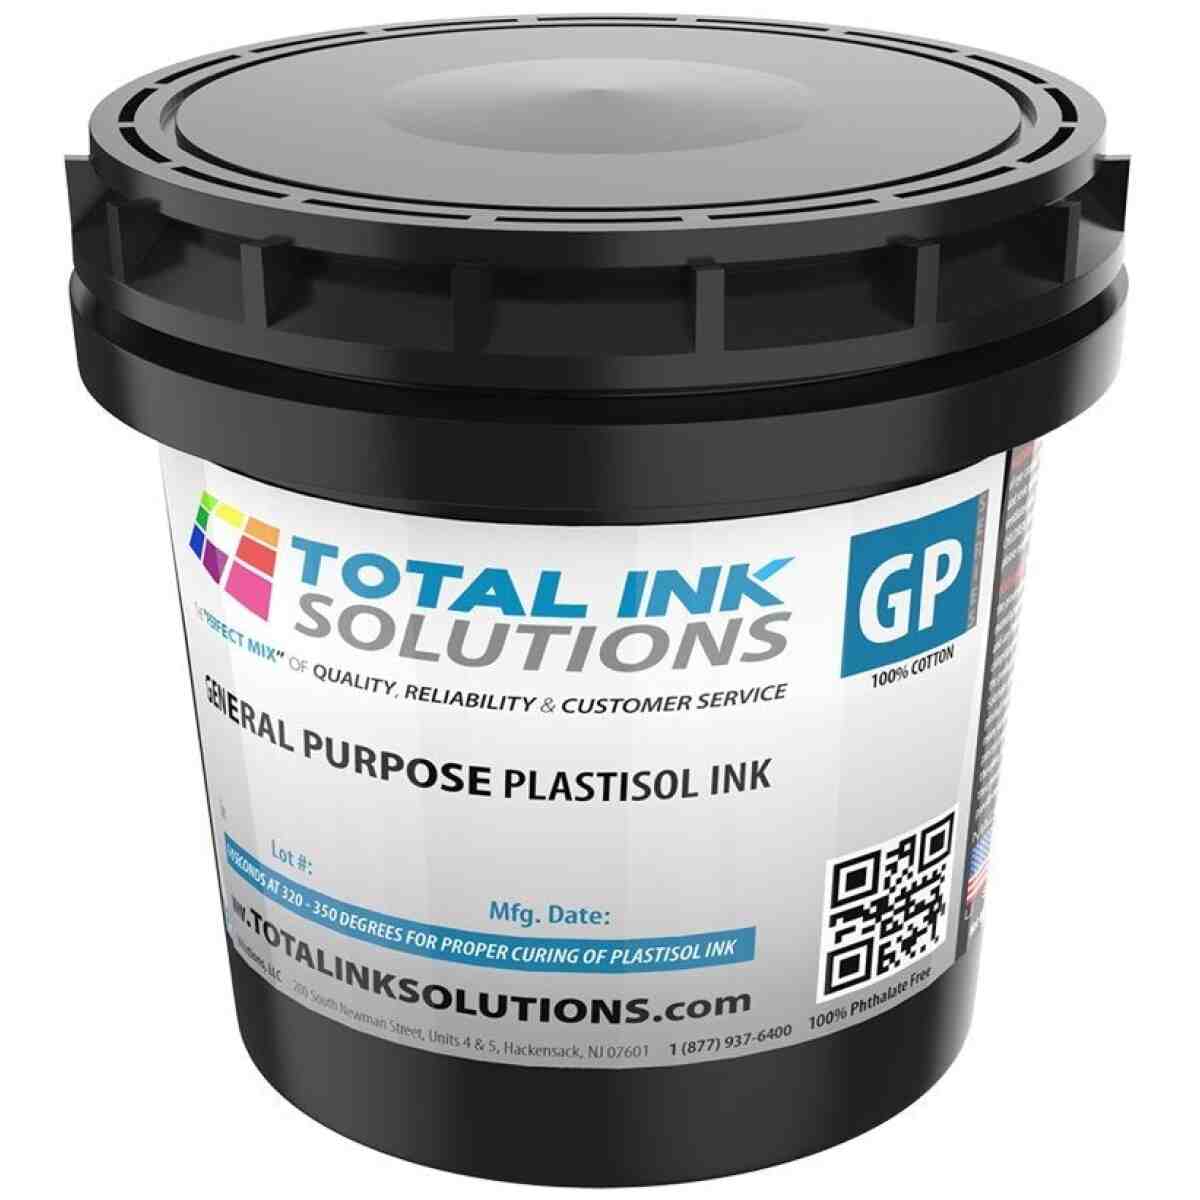 Predator Series Plastisol Ink - Pint TOTAL INK SOLUTIONS®